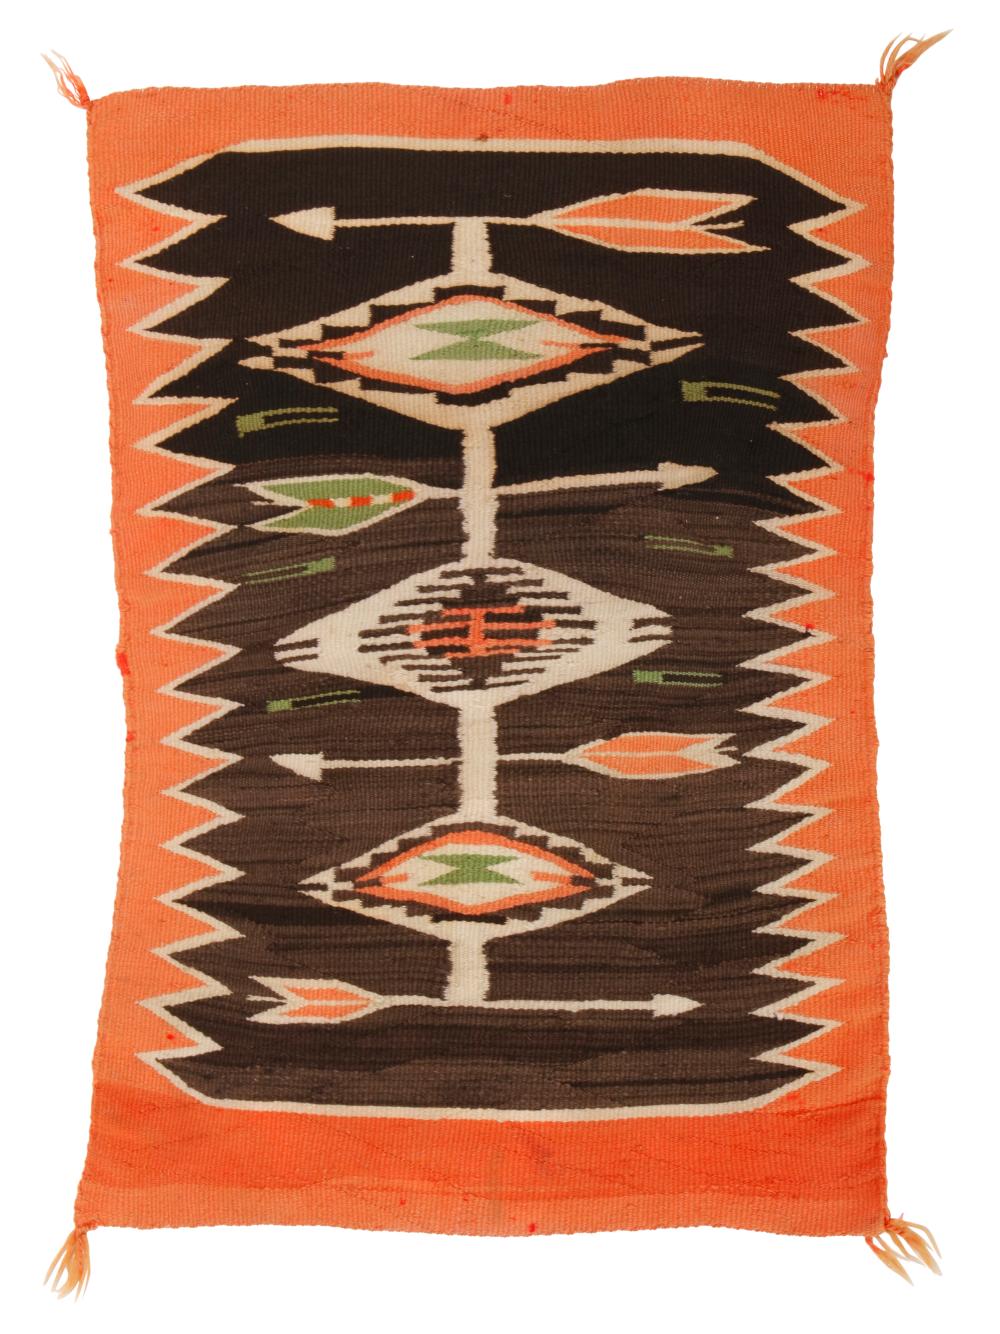 A NAVAJO TEXTILEA Navajo textile  30a983